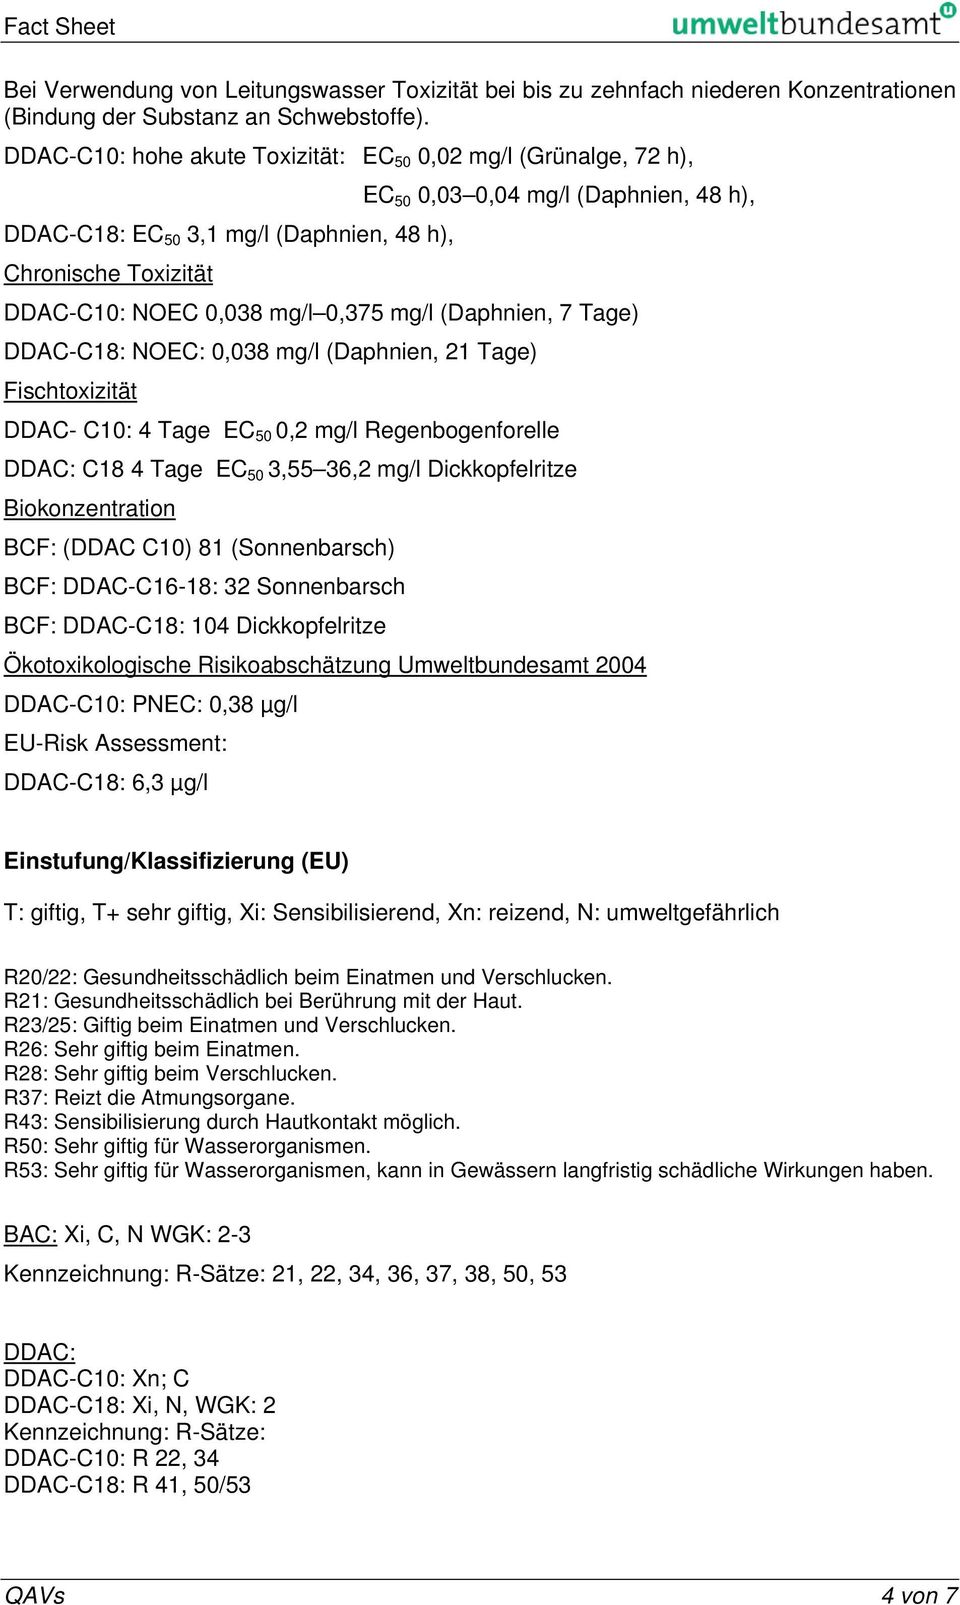 0,375 mg/l (Daphnien, 7 Tage) DDAC-C18: NOEC: 0,038 mg/l (Daphnien, 21 Tage) Fischtoxizität DDAC- C10: 4 Tage EC 50 0,2 mg/l Regenbogenforelle DDAC: C18 4 Tage EC 50 3,55 36,2 mg/l Dickkopfelritze